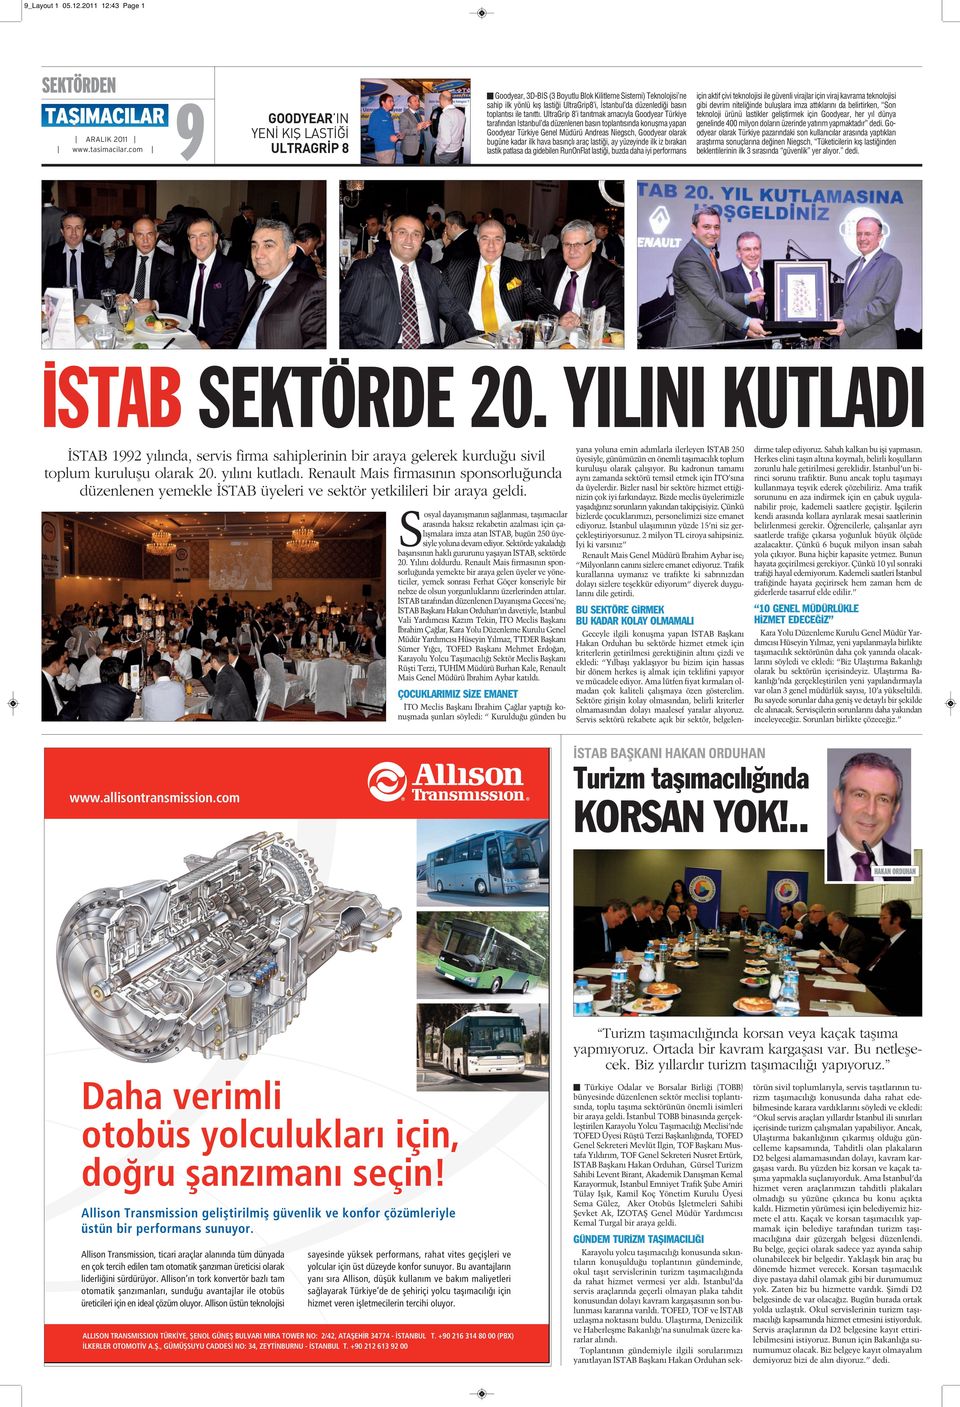 İstanbul da düzenlediği basın toplantısı ile tanıttı.